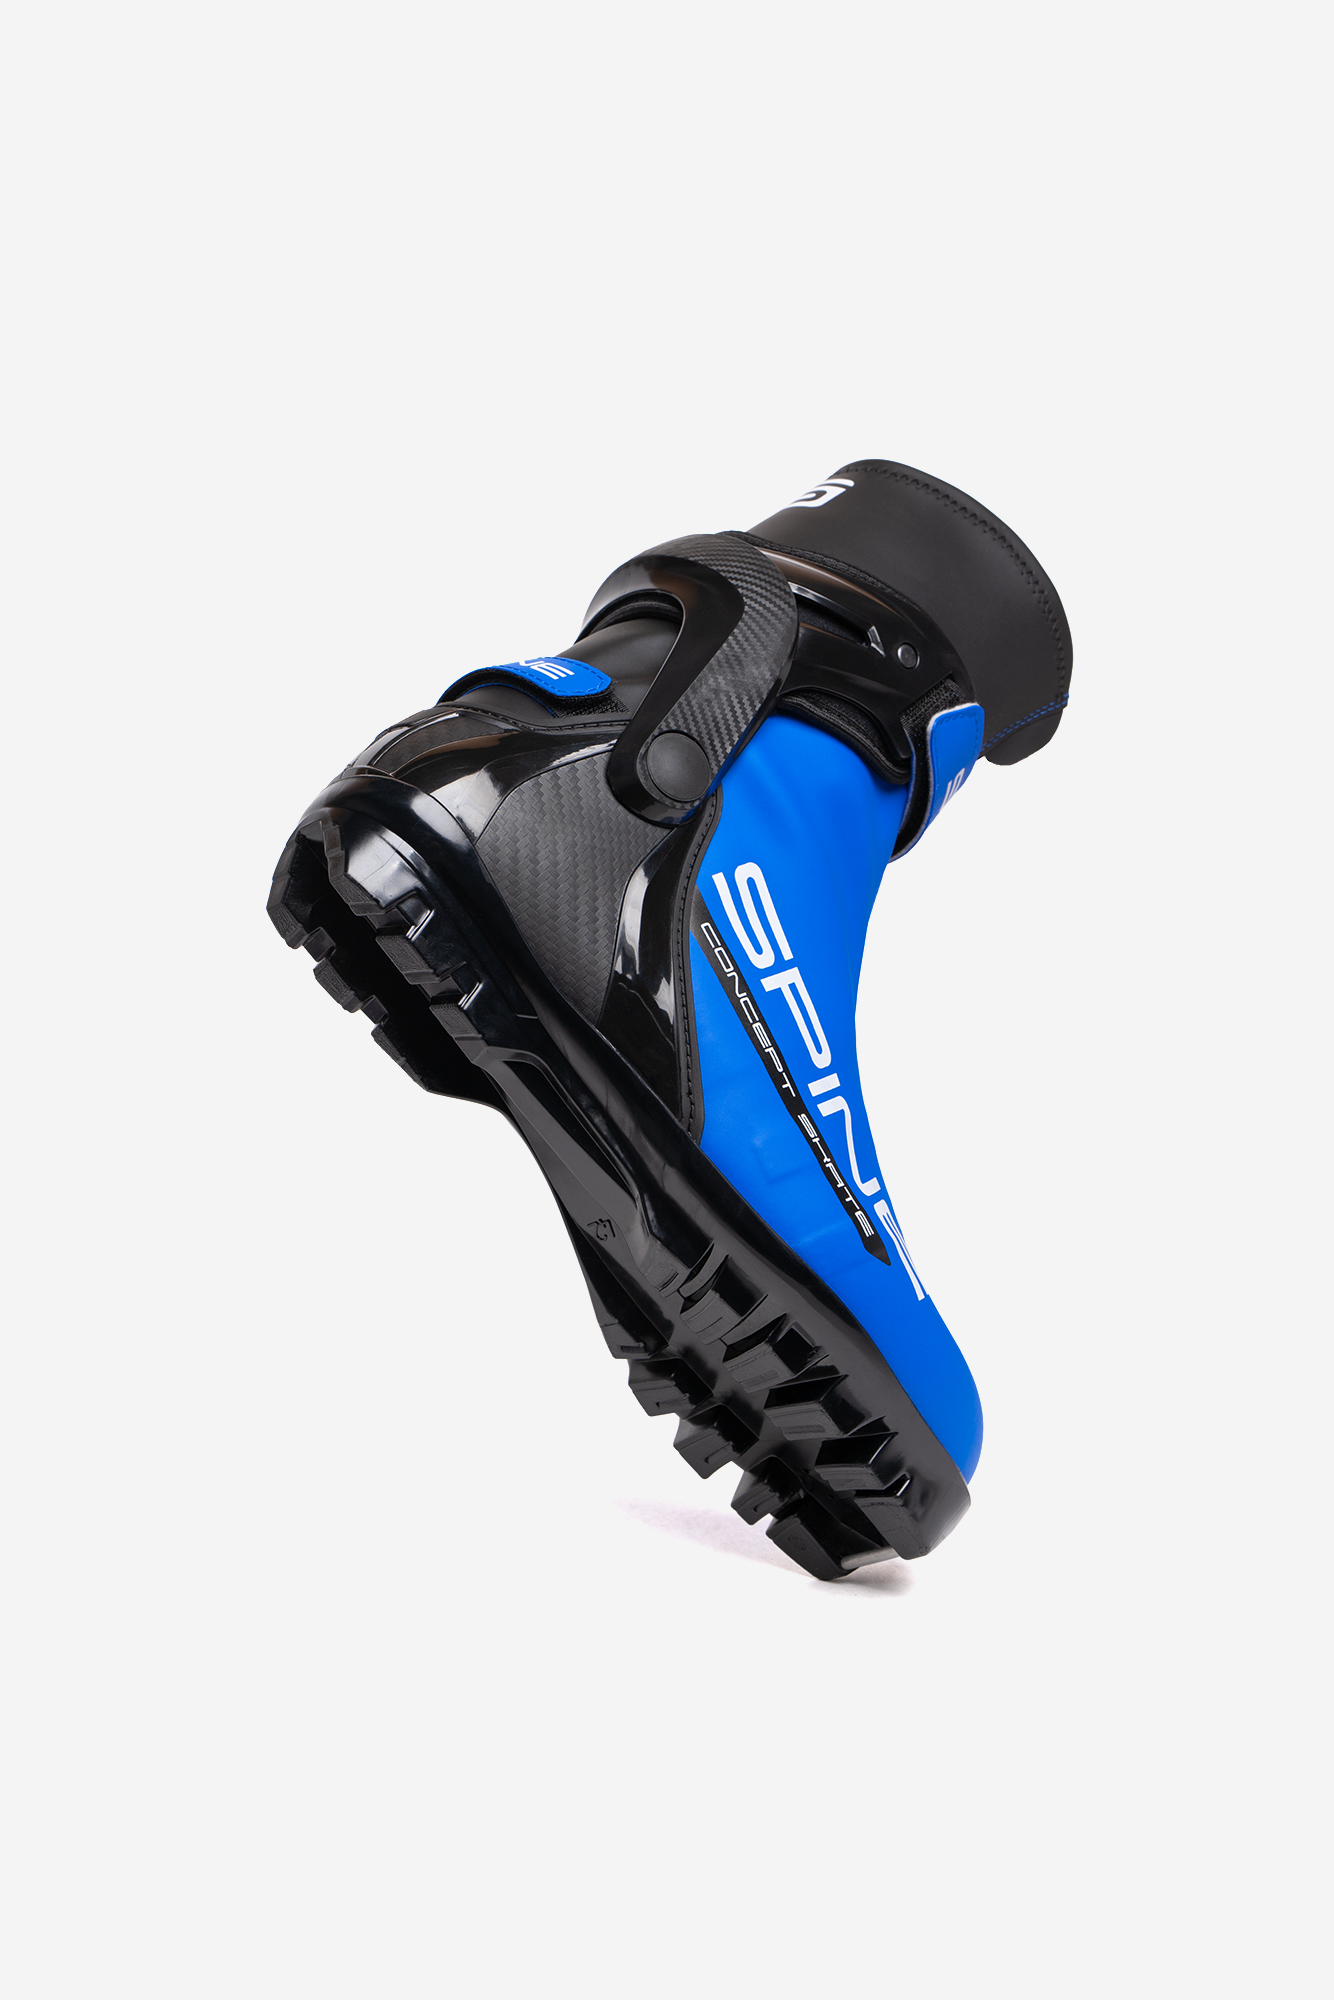 Лыжные ботинки SNS Spine Concept Skate (496/1-22) (синий) 1334_2000